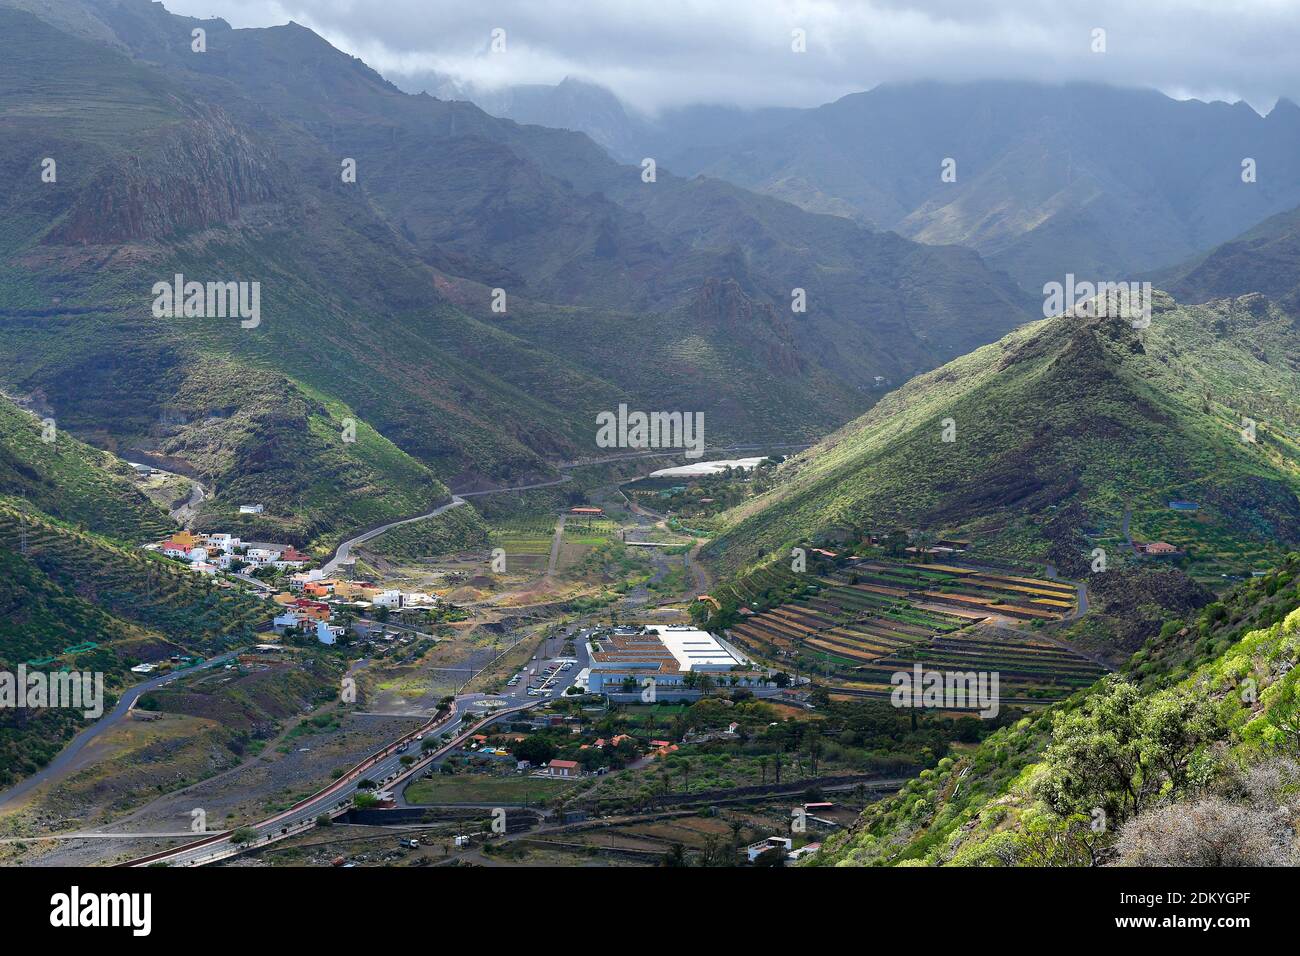 Espagne, îles Canaries, la Gomera, petit village au milieu des montagnes avec terrasses de culture Banque D'Images